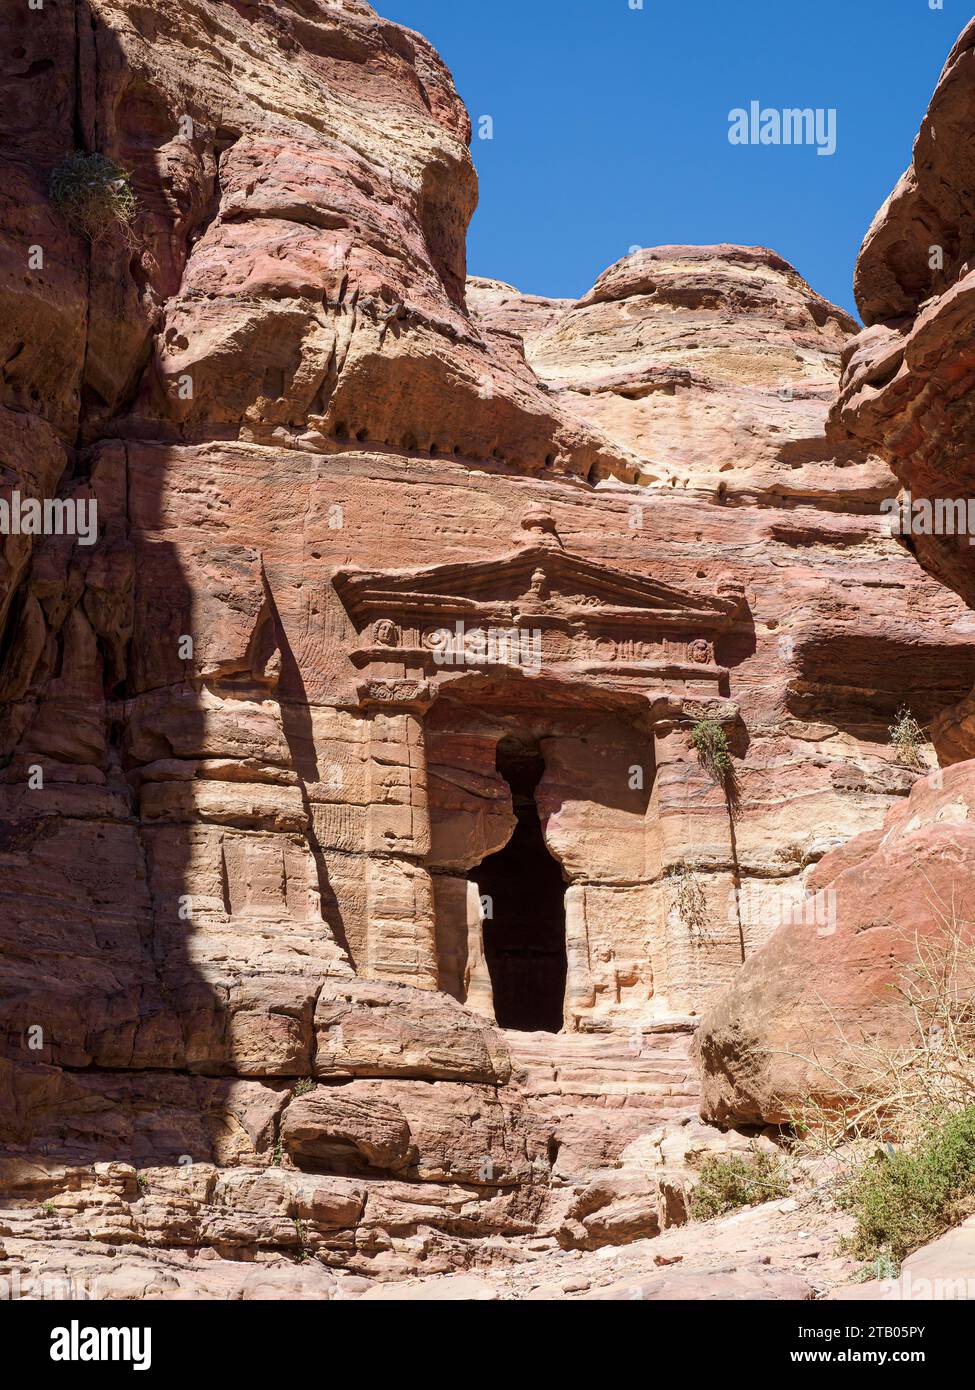 Il tempio dei leoni alati, il parco archeologico di Petra, un sito patrimonio dell'umanità dell'UNESCO, 7 nuove meraviglie del mondo, Giordania. Foto Stock